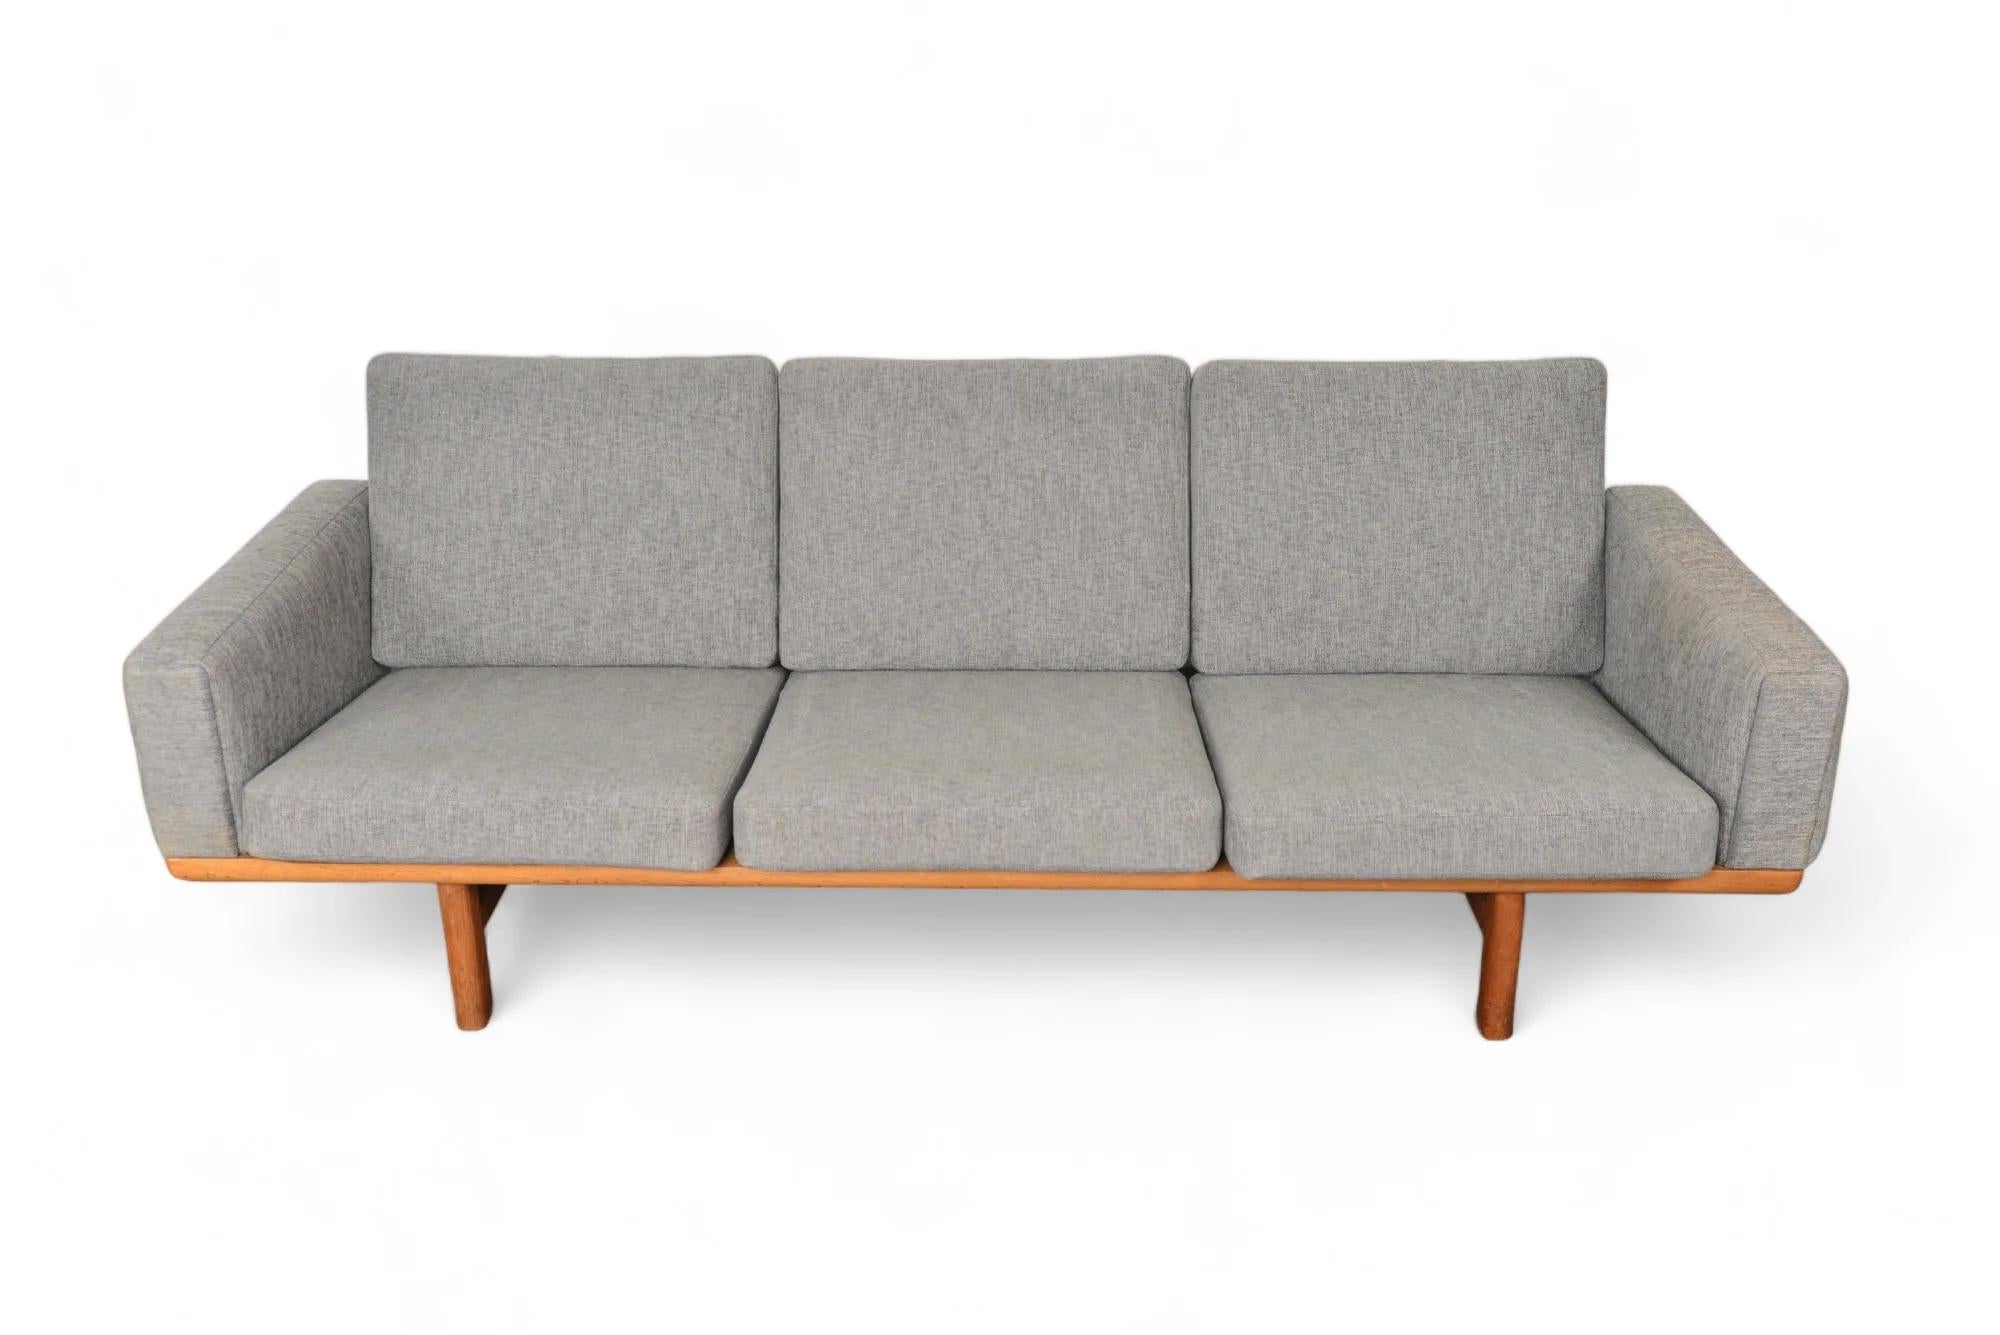 Ce canapé moderne danois à trois places en chêne a été conçu par Hans Wegner comme modèle GE- 236-3 pour Getama dans les années 1950. Cette pièce excellemment conservée présente un dossier sculptural, des accoudoirs rembourrés et six coussins à